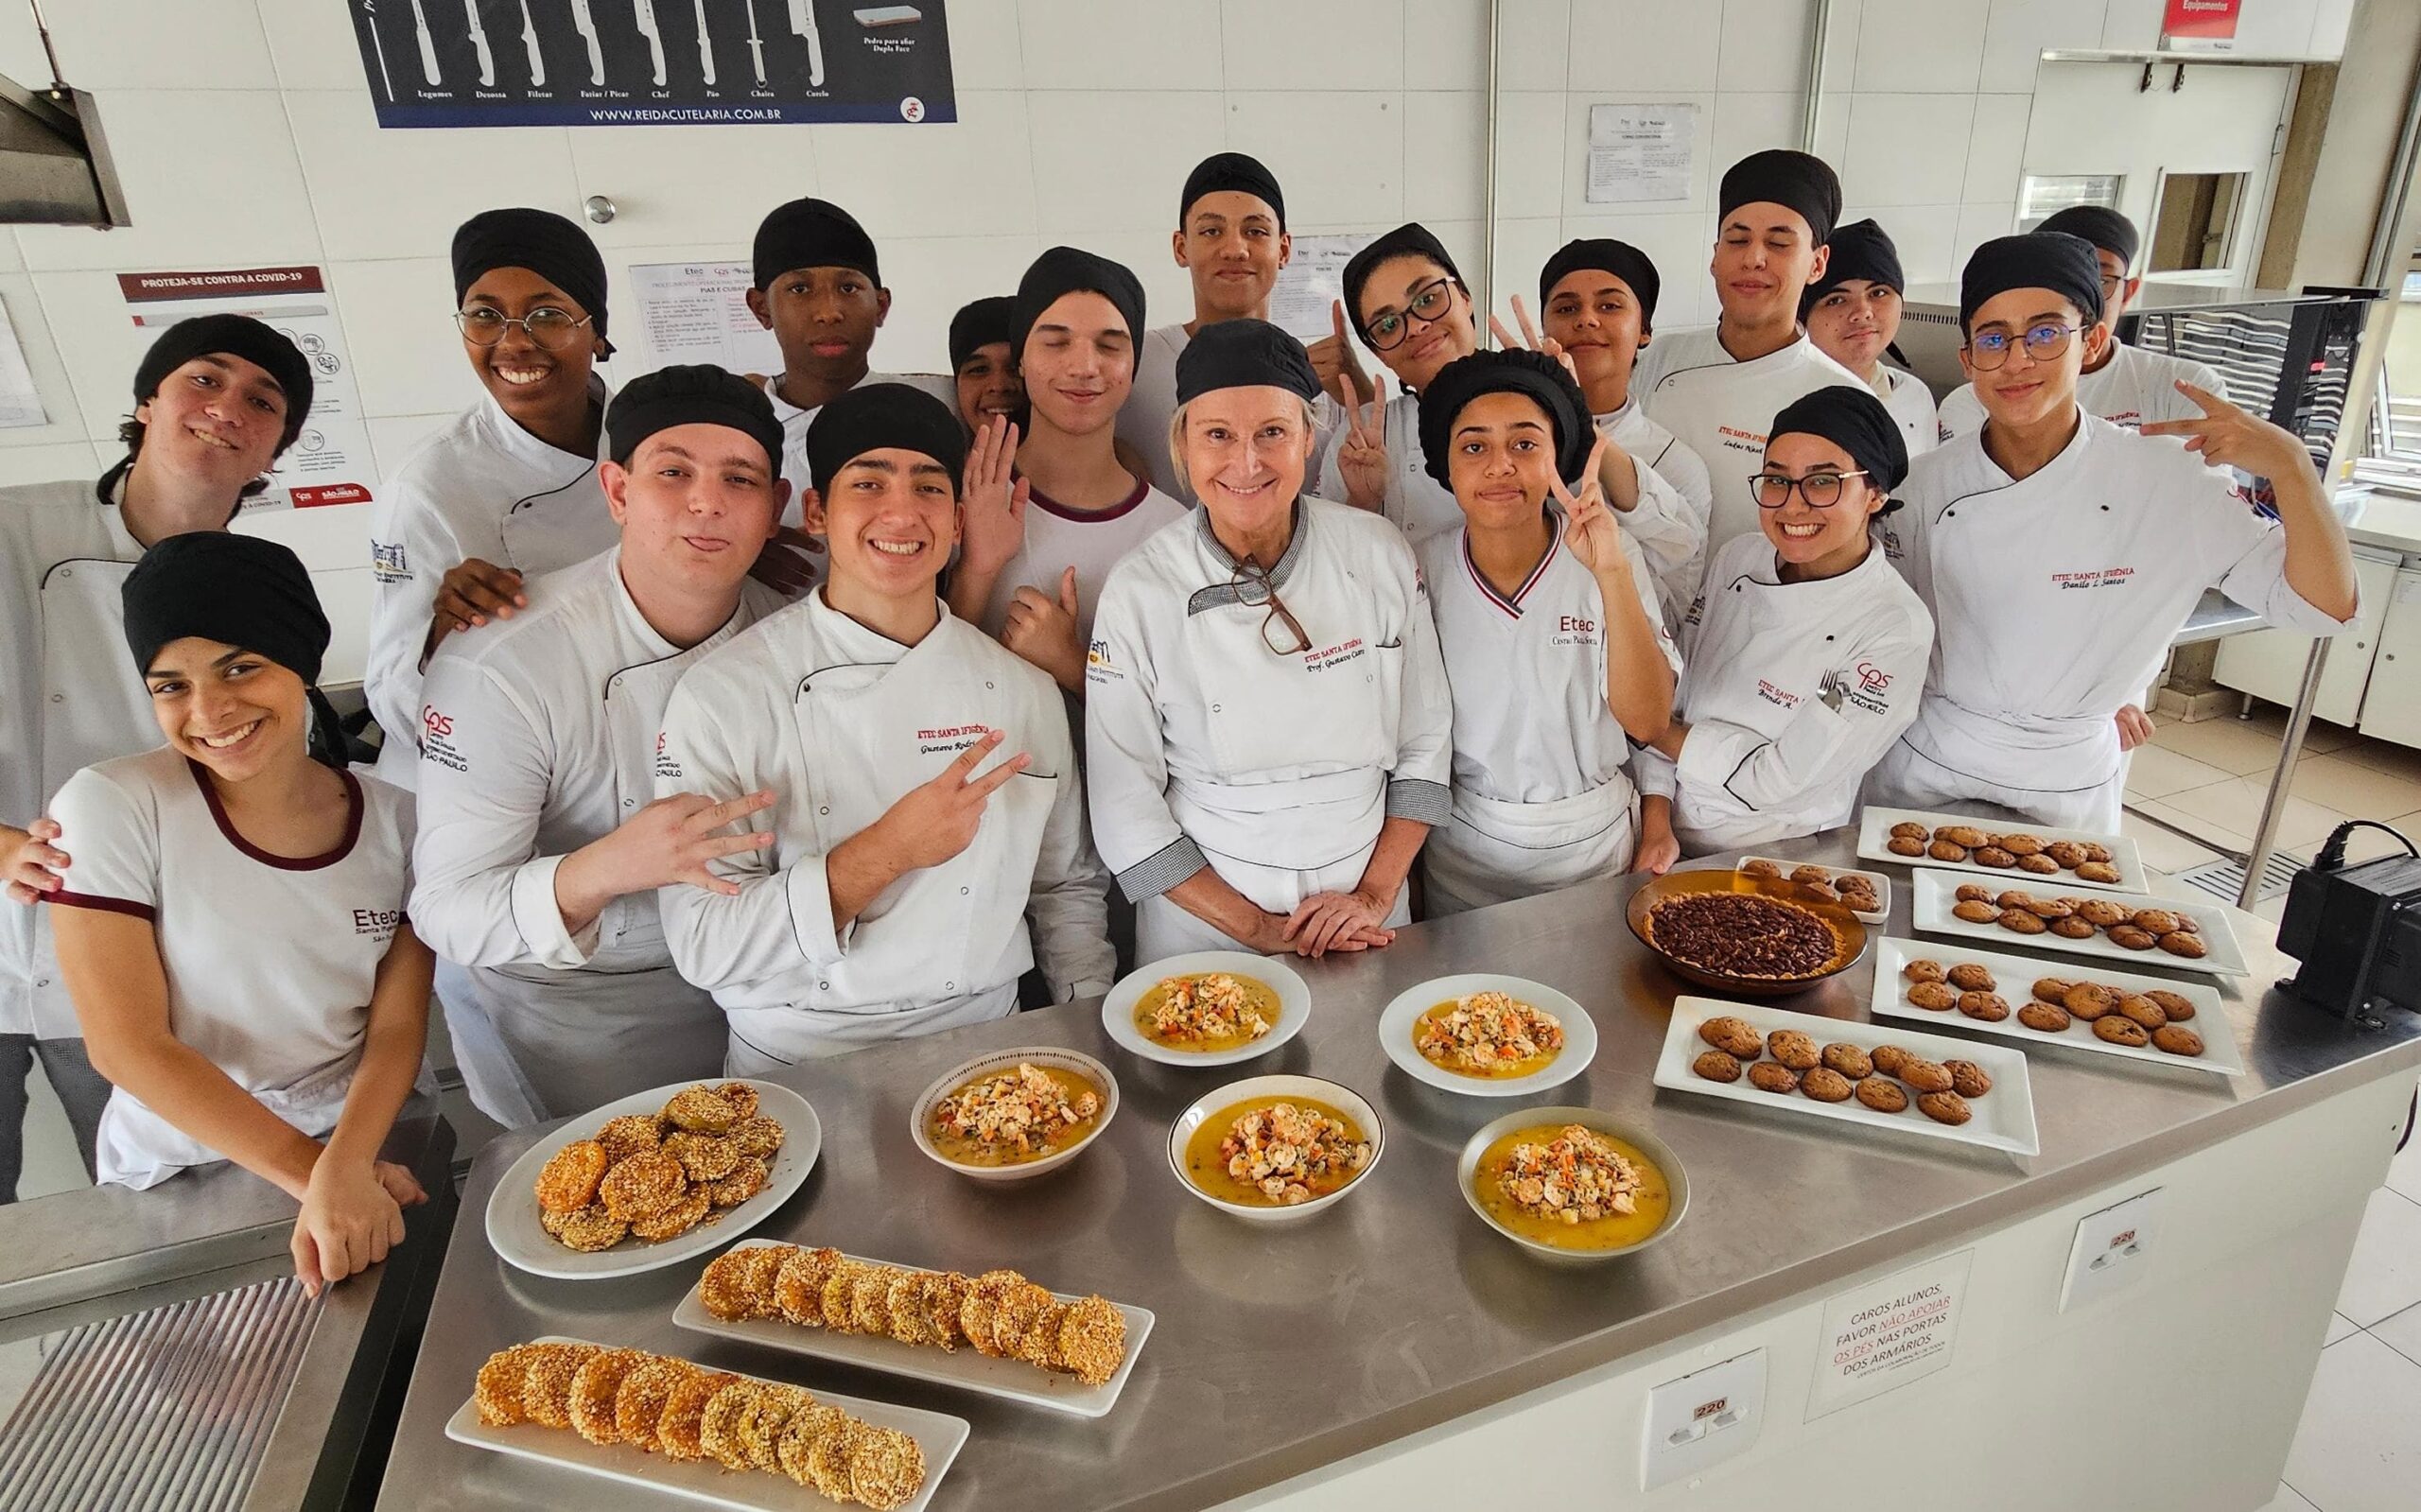 Aposentada há dois anos, a professora chamou de ‘ganha-ganha’ a experiência de estar com o grupo do Mtec de Gastronomia durante uma semana | Foto: Roberto Sungi